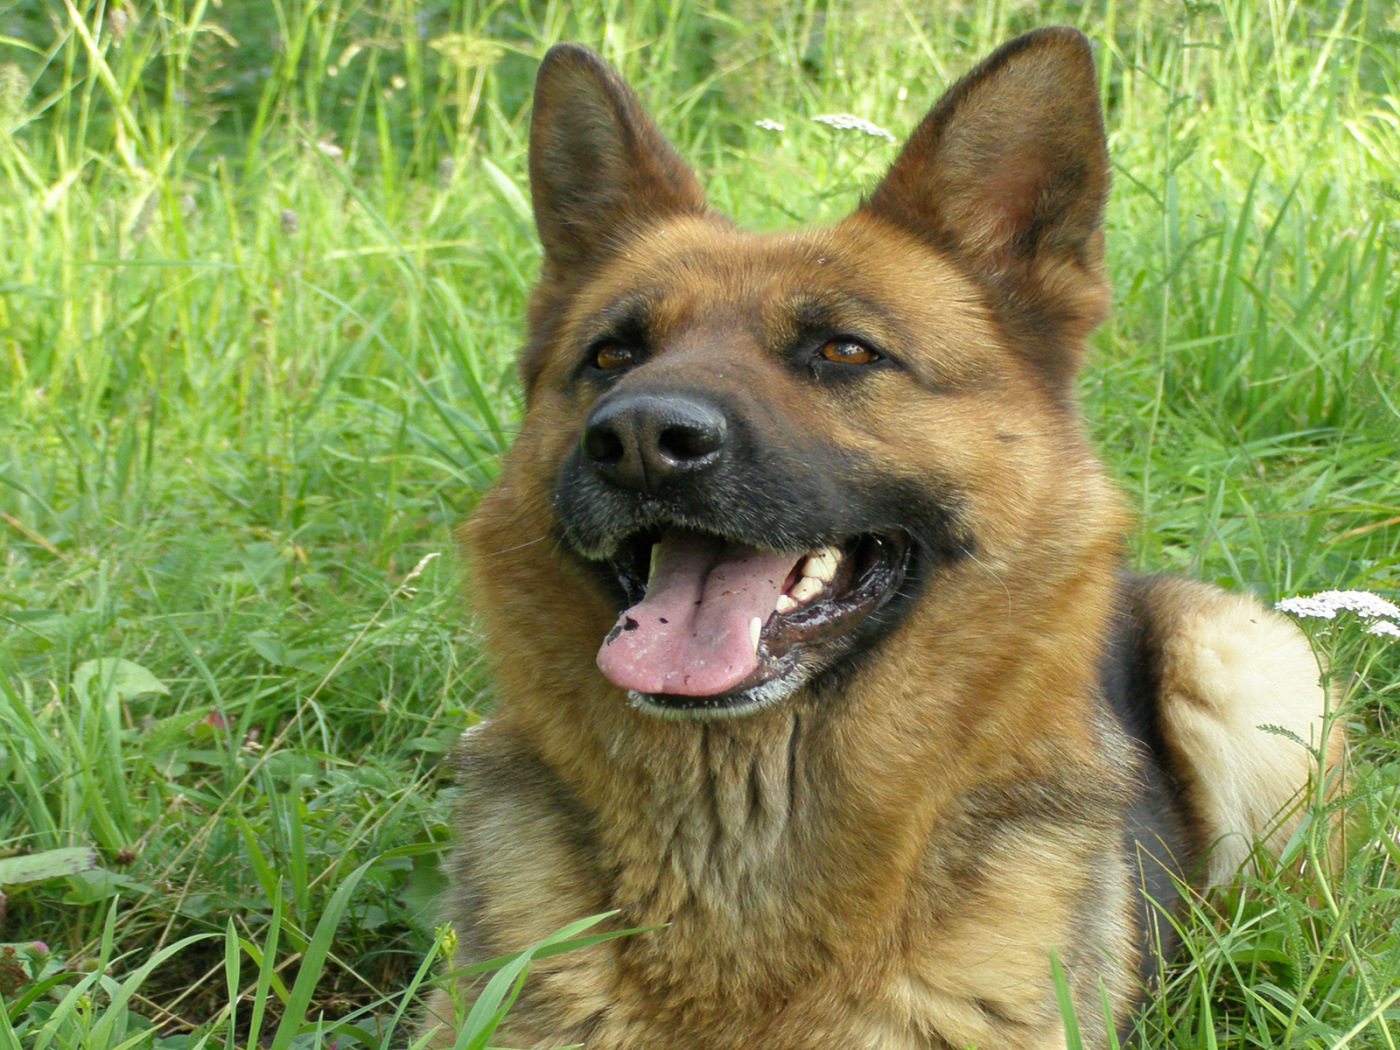 German Shepherd smiles